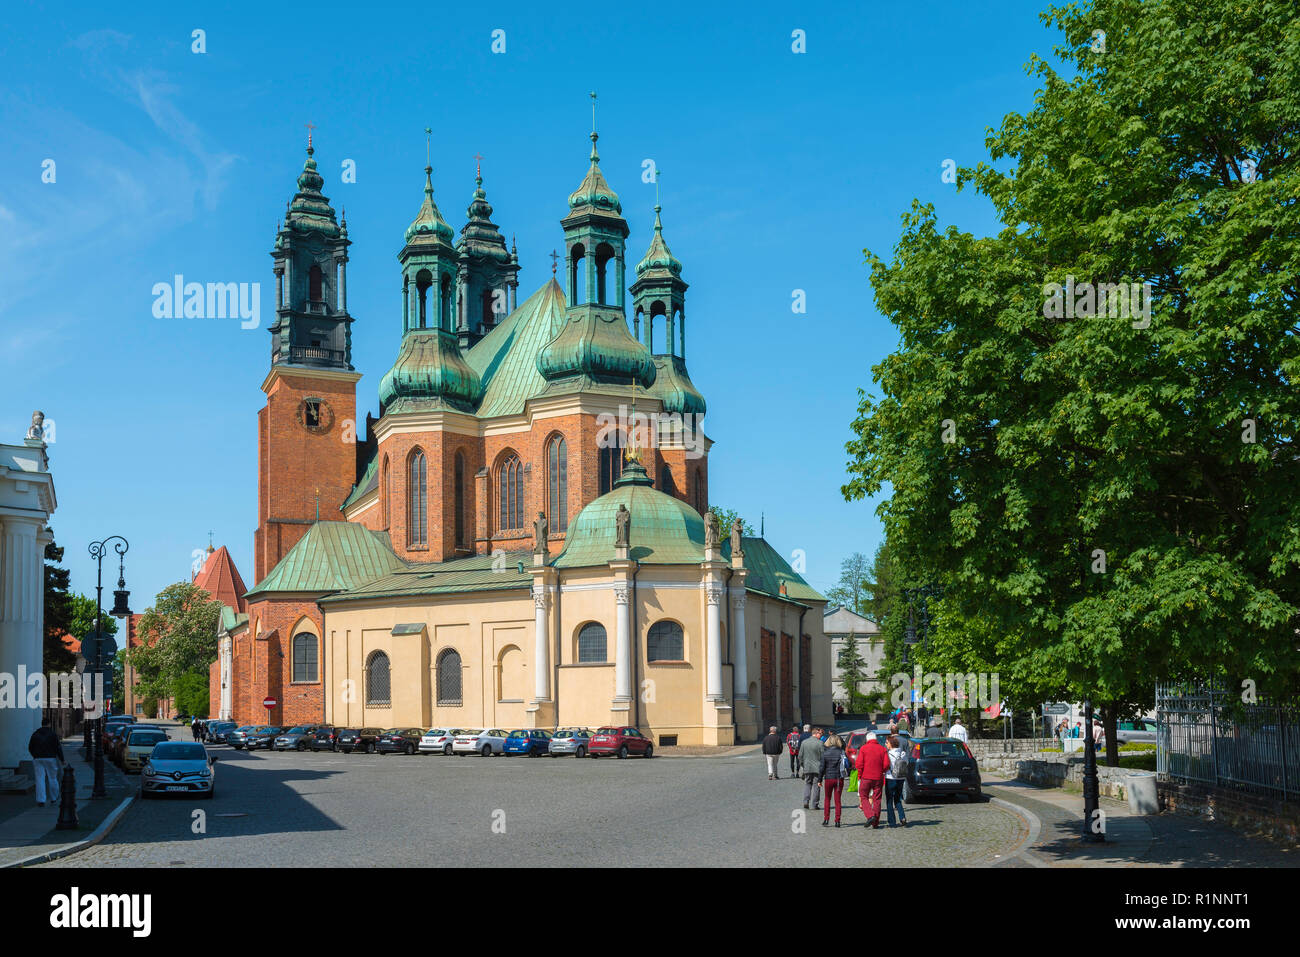 Cattedrale di Poznan, vista della cattedrale della città con il suo distintivo cinque torri, Ostrow Tumski, Poznan, Polonia. Foto Stock